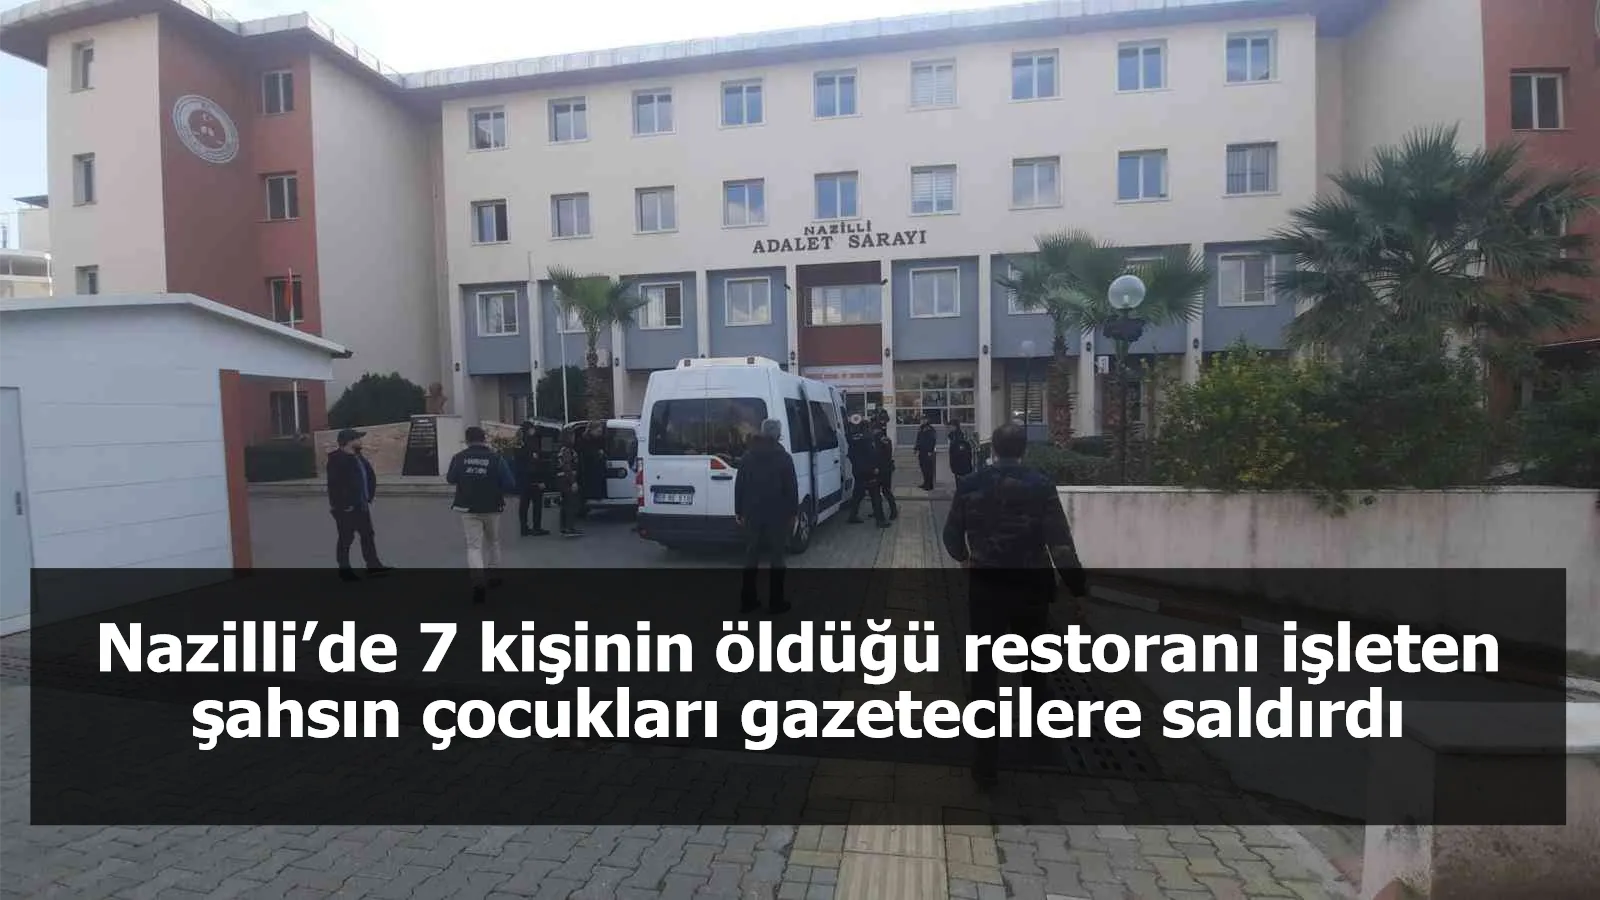 Nazilli’de 7 kişinin öldüğü restoranı işleten şahsın çocukları gazetecilere saldırdı